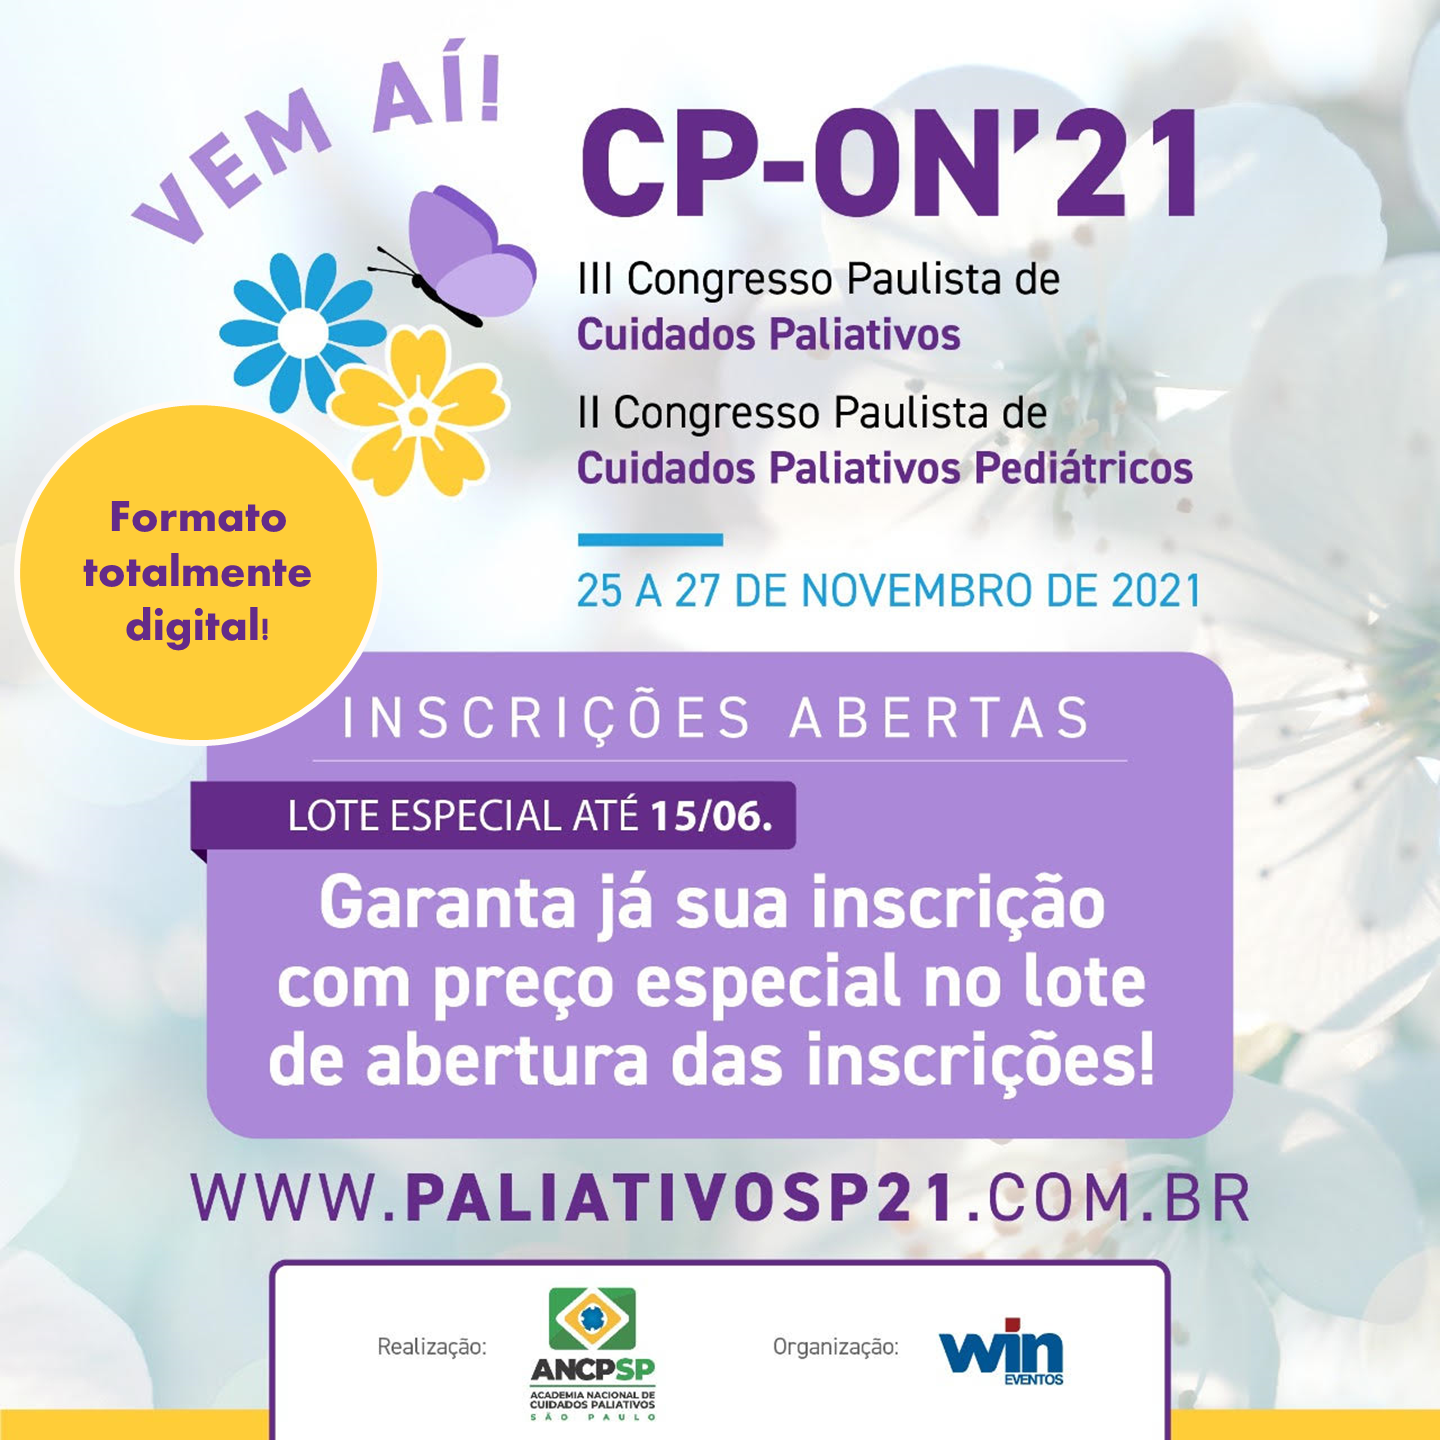 Estão abertas as inscrições para o III Congresso Paulista de Cuidados Paliativos e II Congresso Paulista de Cuidados Paliativos Pediátricos